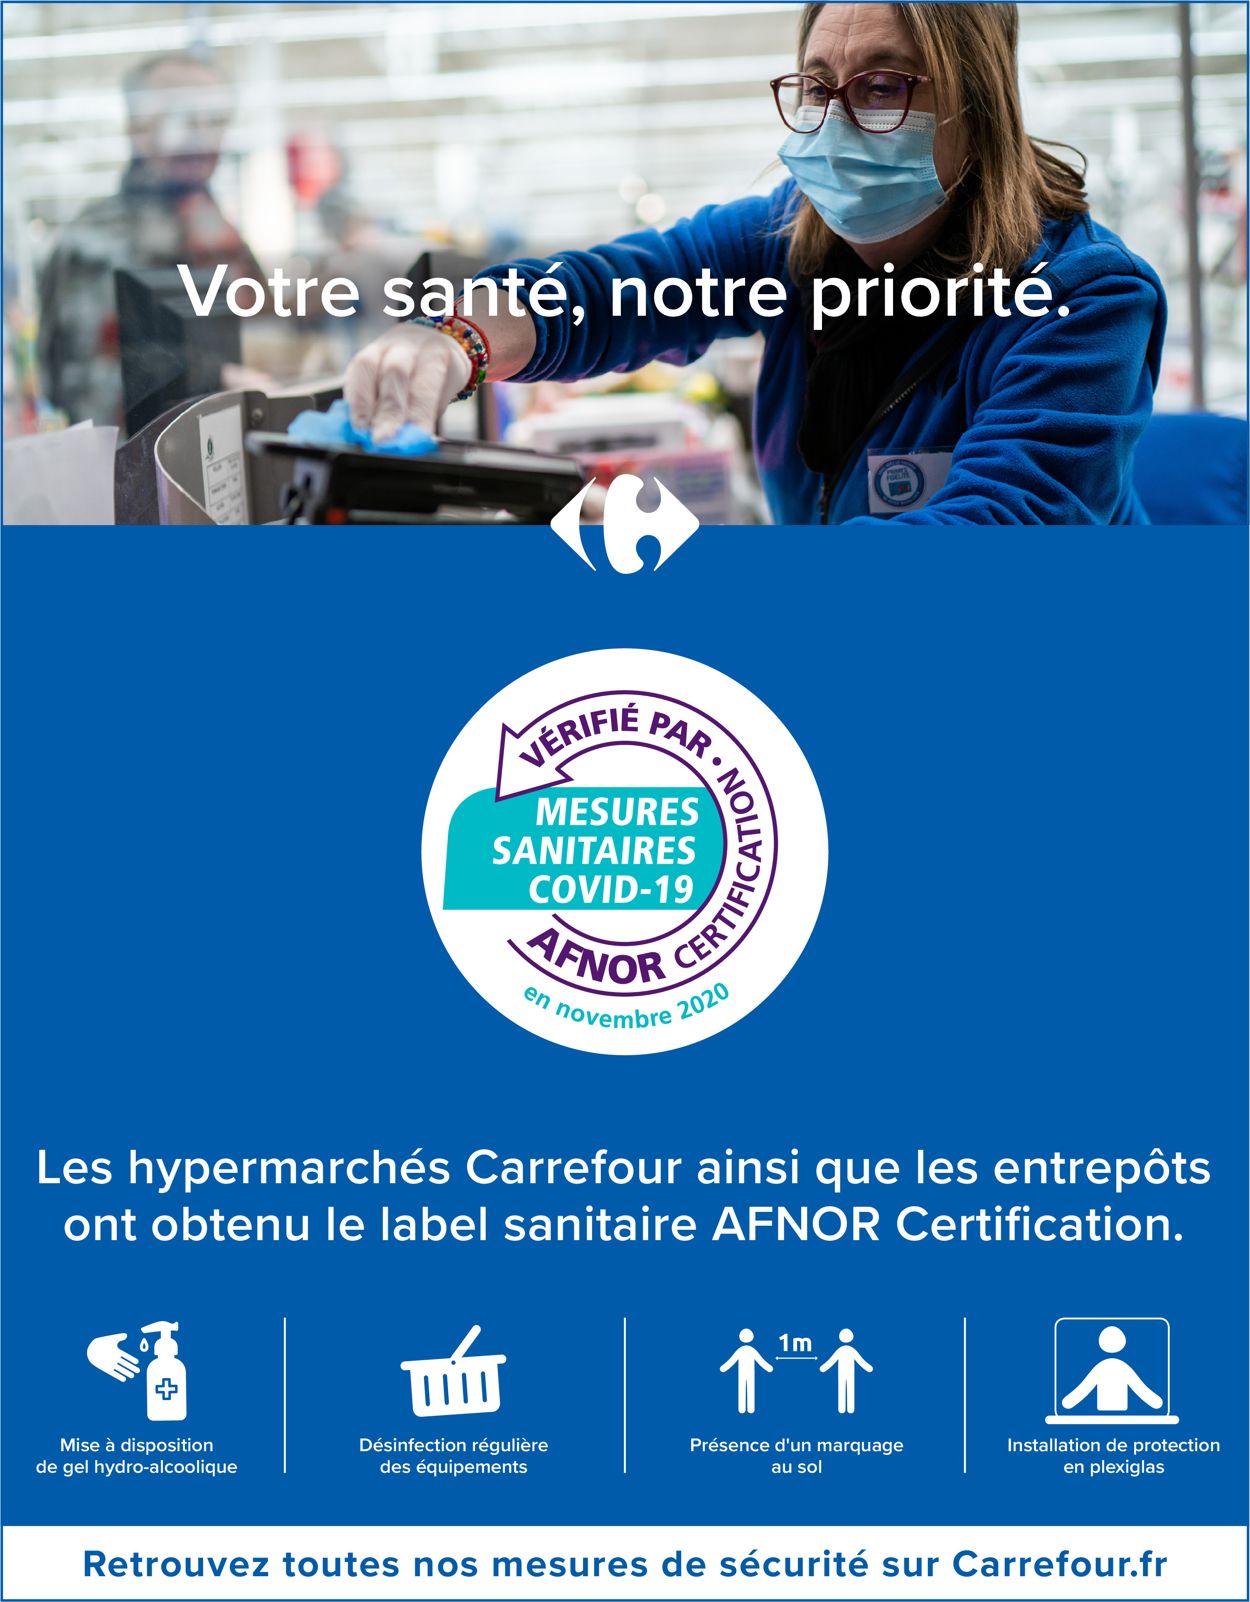 Carrefour Catalogue du 18.03.2021